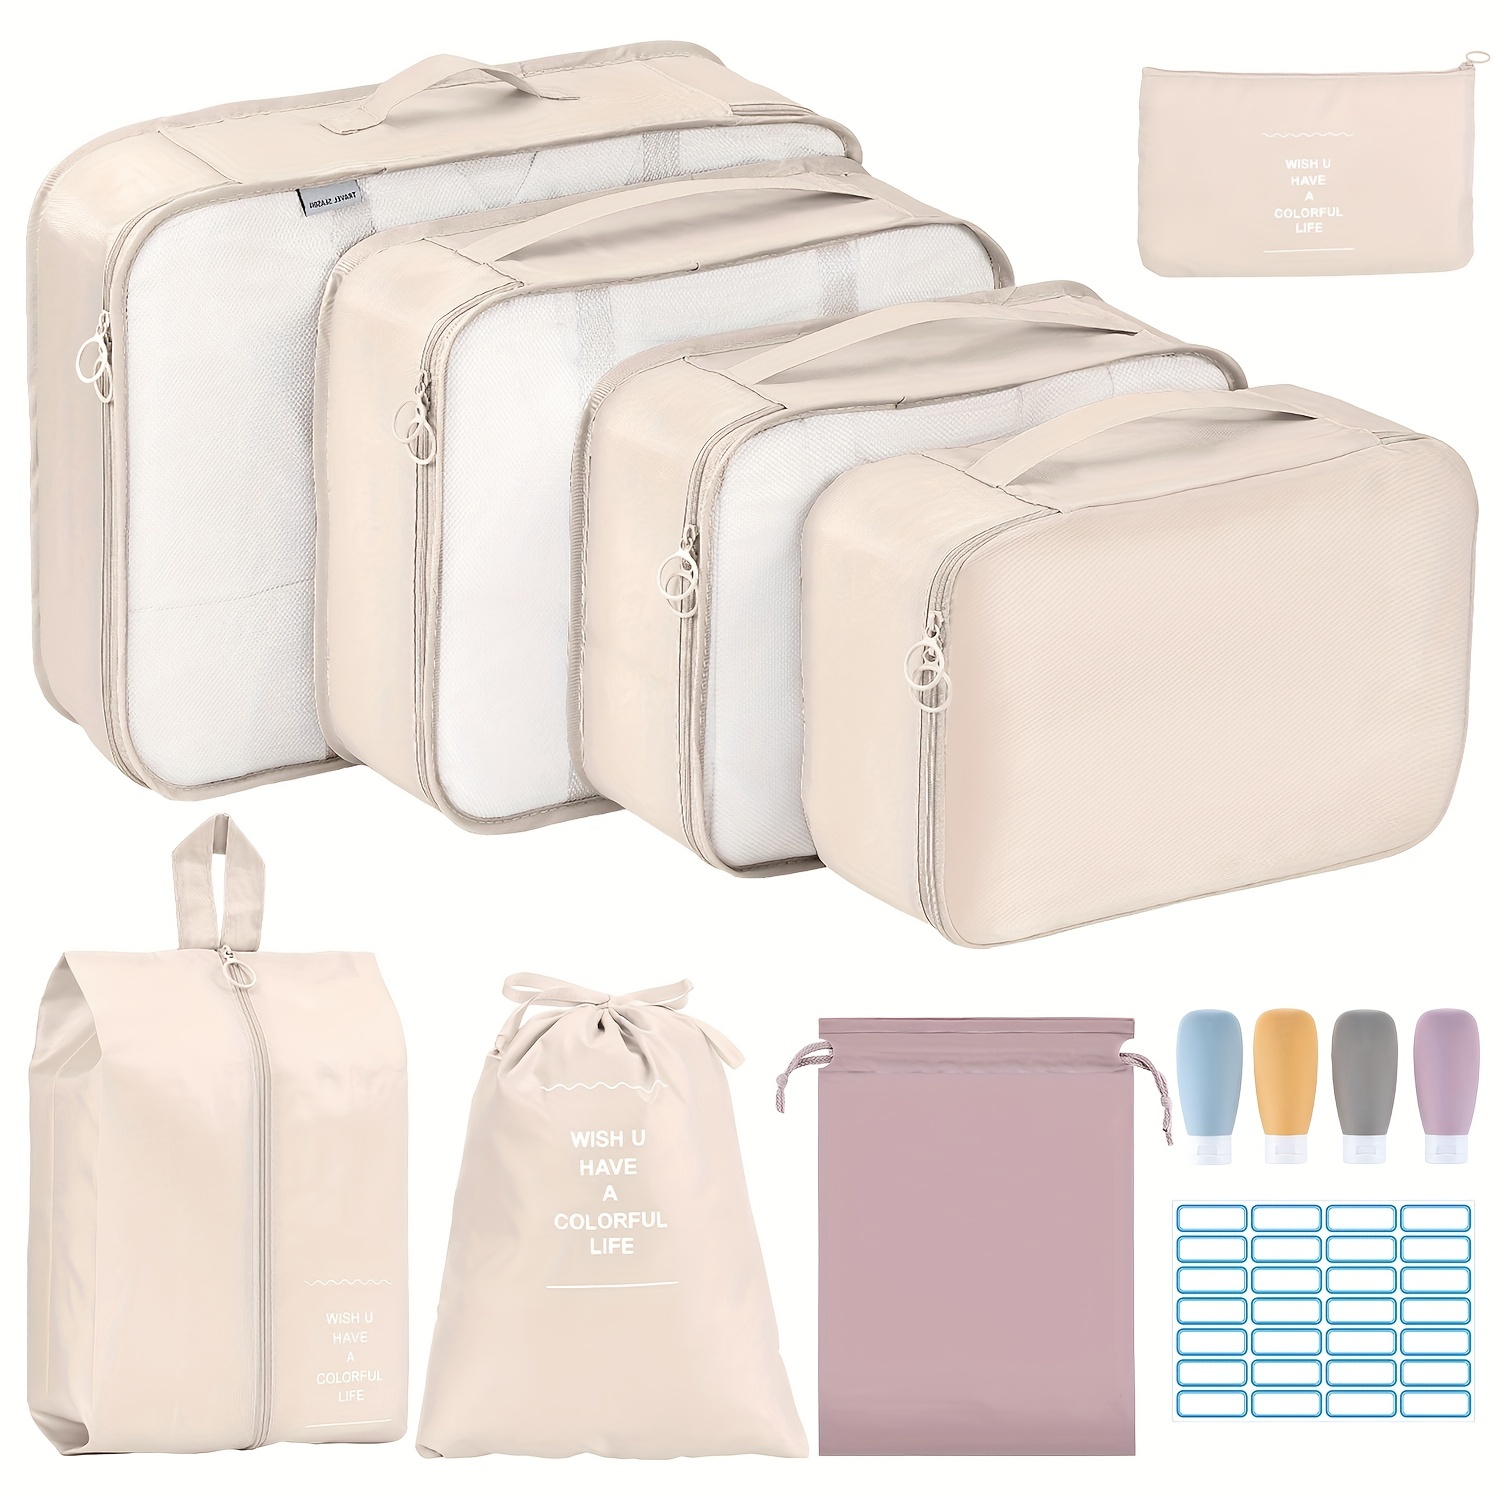  Organizador de equipaje de viaje, 6 bolsas esenciales de viaje  en bolsa, bolsa de almacenamiento impermeable para artículos de tocador y  cosméticos, con cremallera, bolsa organizadora de zapatos, juego de 6 (